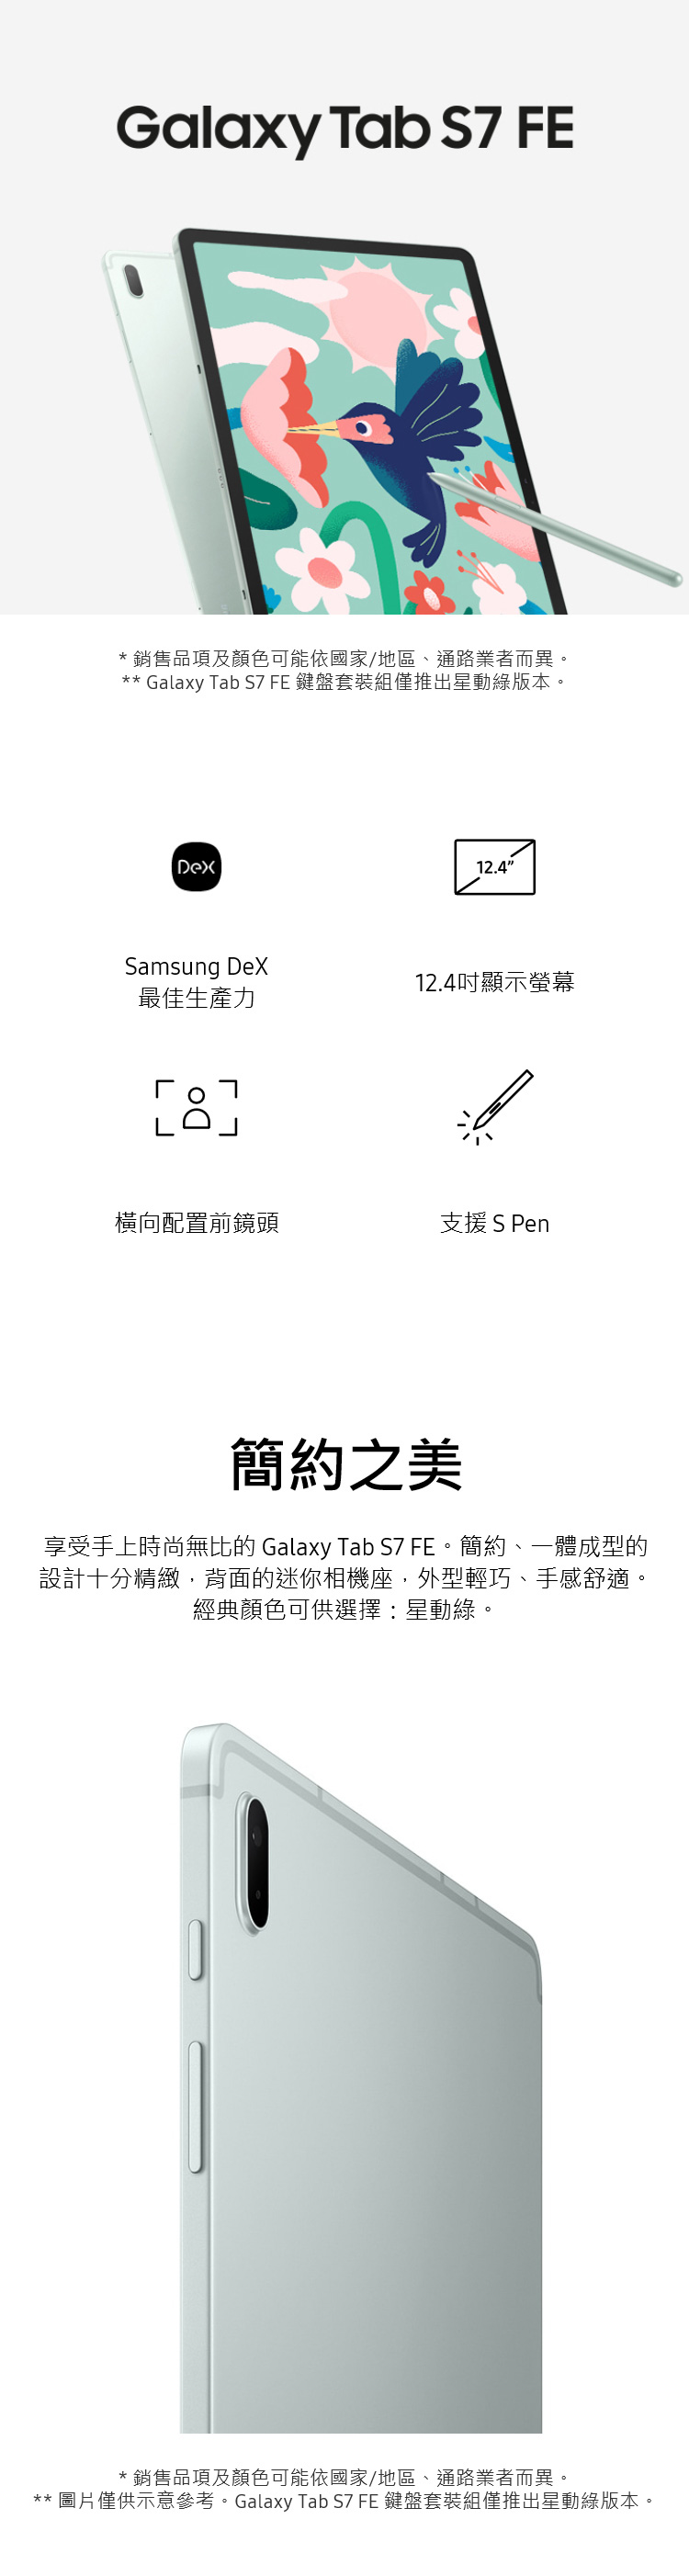 【三星】Galaxy Tab S7 FE Wi-Fi 4G 64G T733